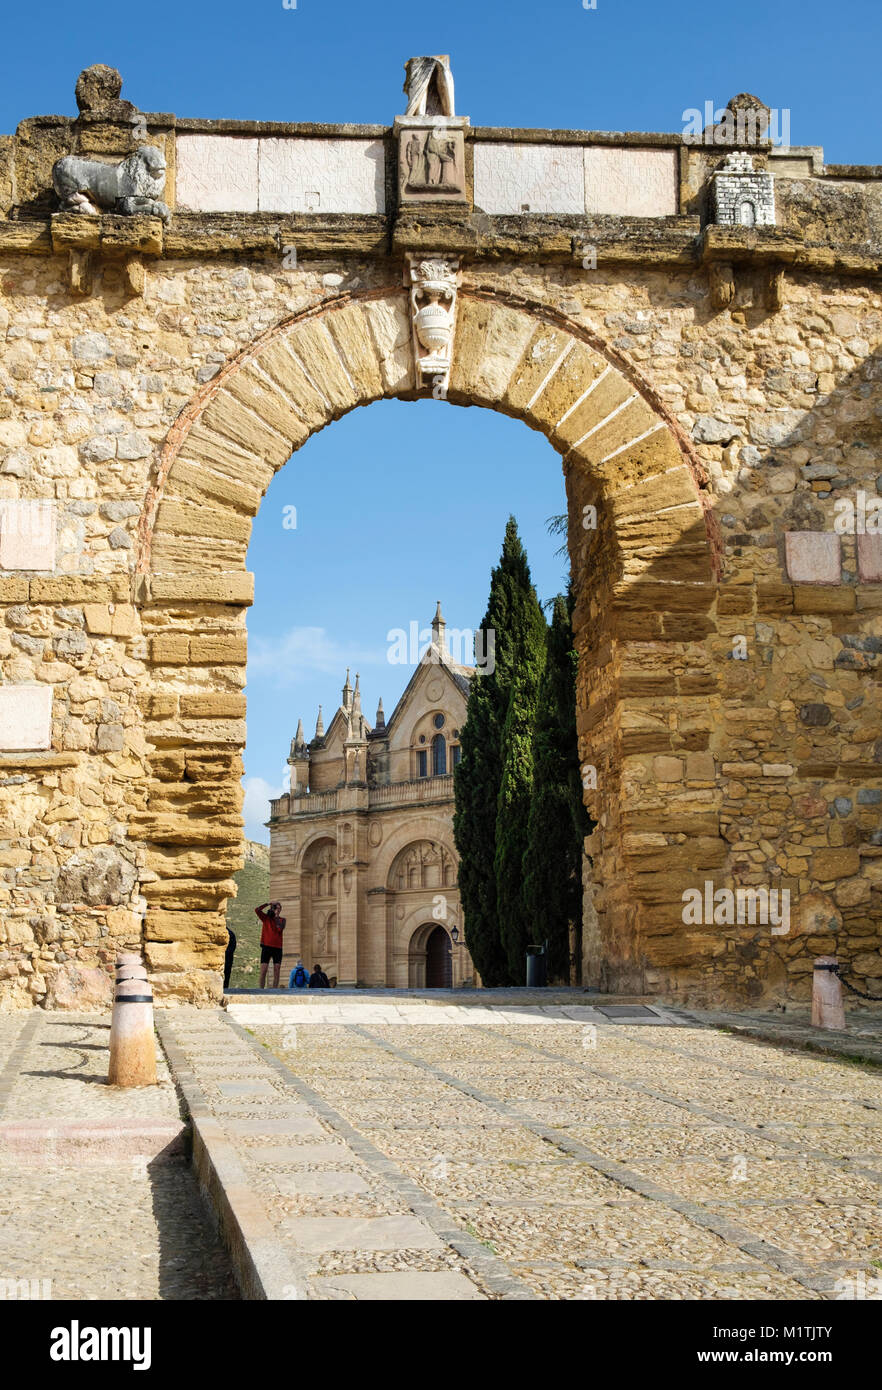 Giants Arch (Arco de los Gigantes] to the Royal Collegiate Church of Santa María La Mayor (Colegiata de Santa Maria la mayor), Antequera, Spain Stock Photo